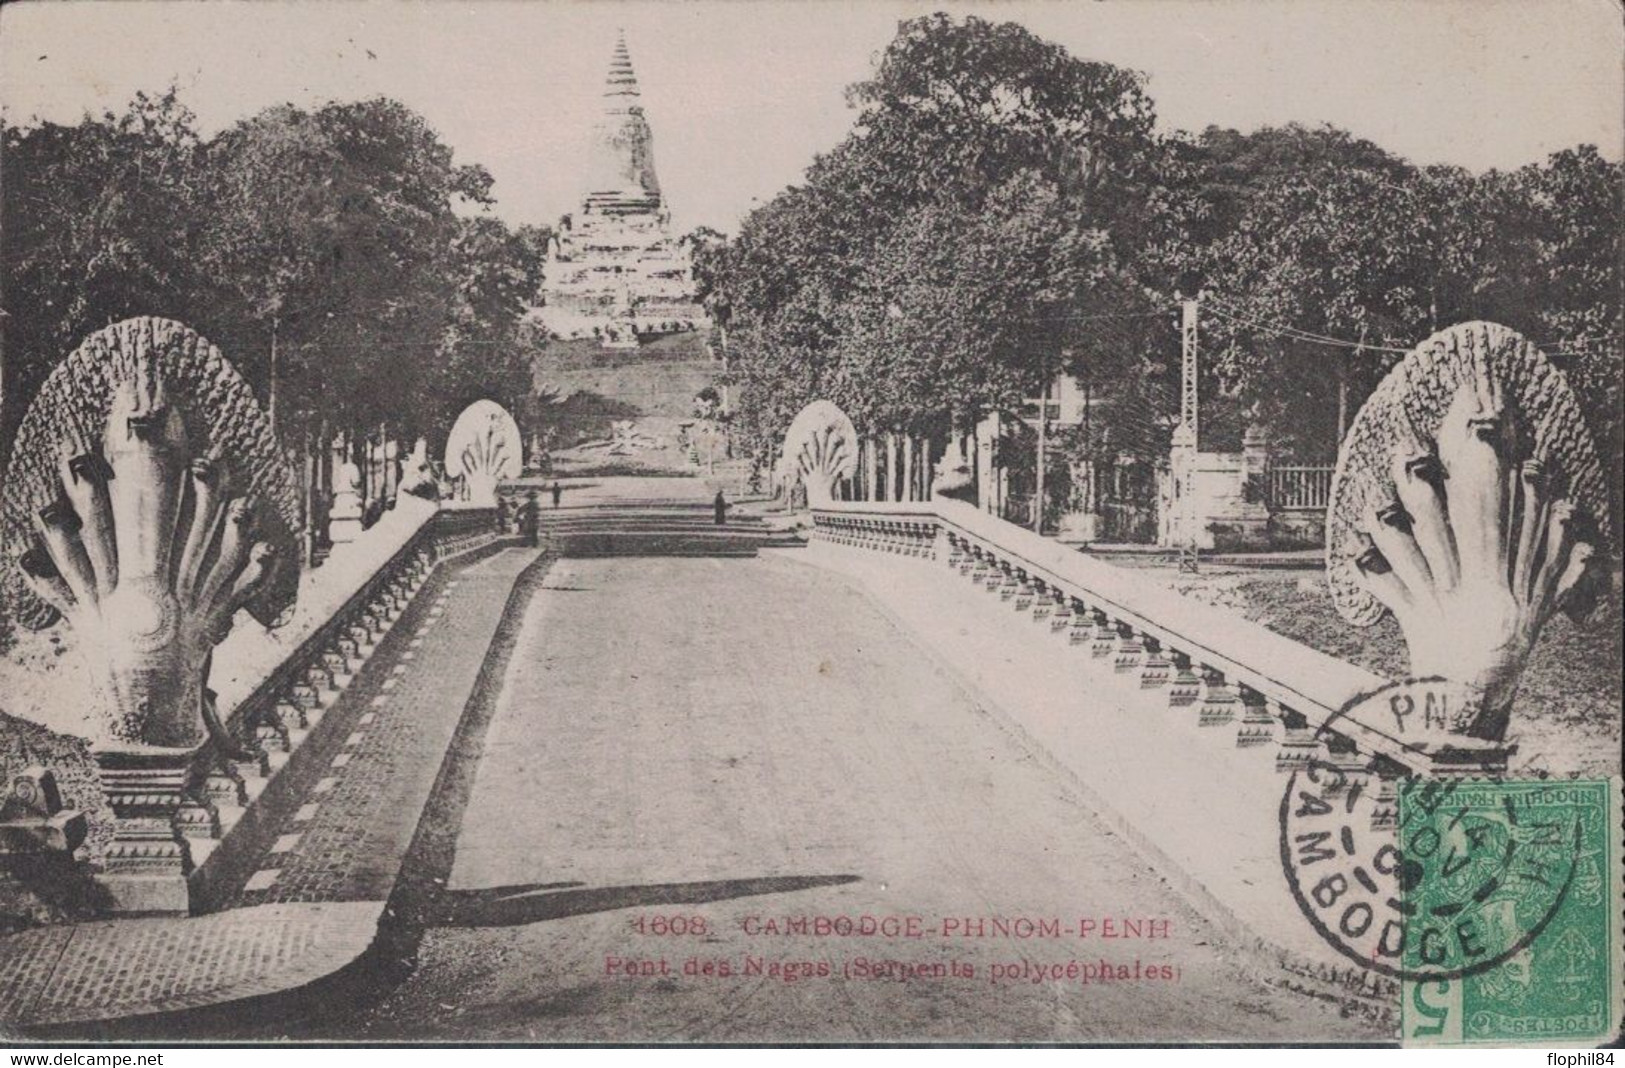 CAMBODGE - PNOMPENH - LE 14 NOVEMBRE 1906 - CARTE POSTALE PONT DES NAGAS POUR LA FRANCE. - Cambodia